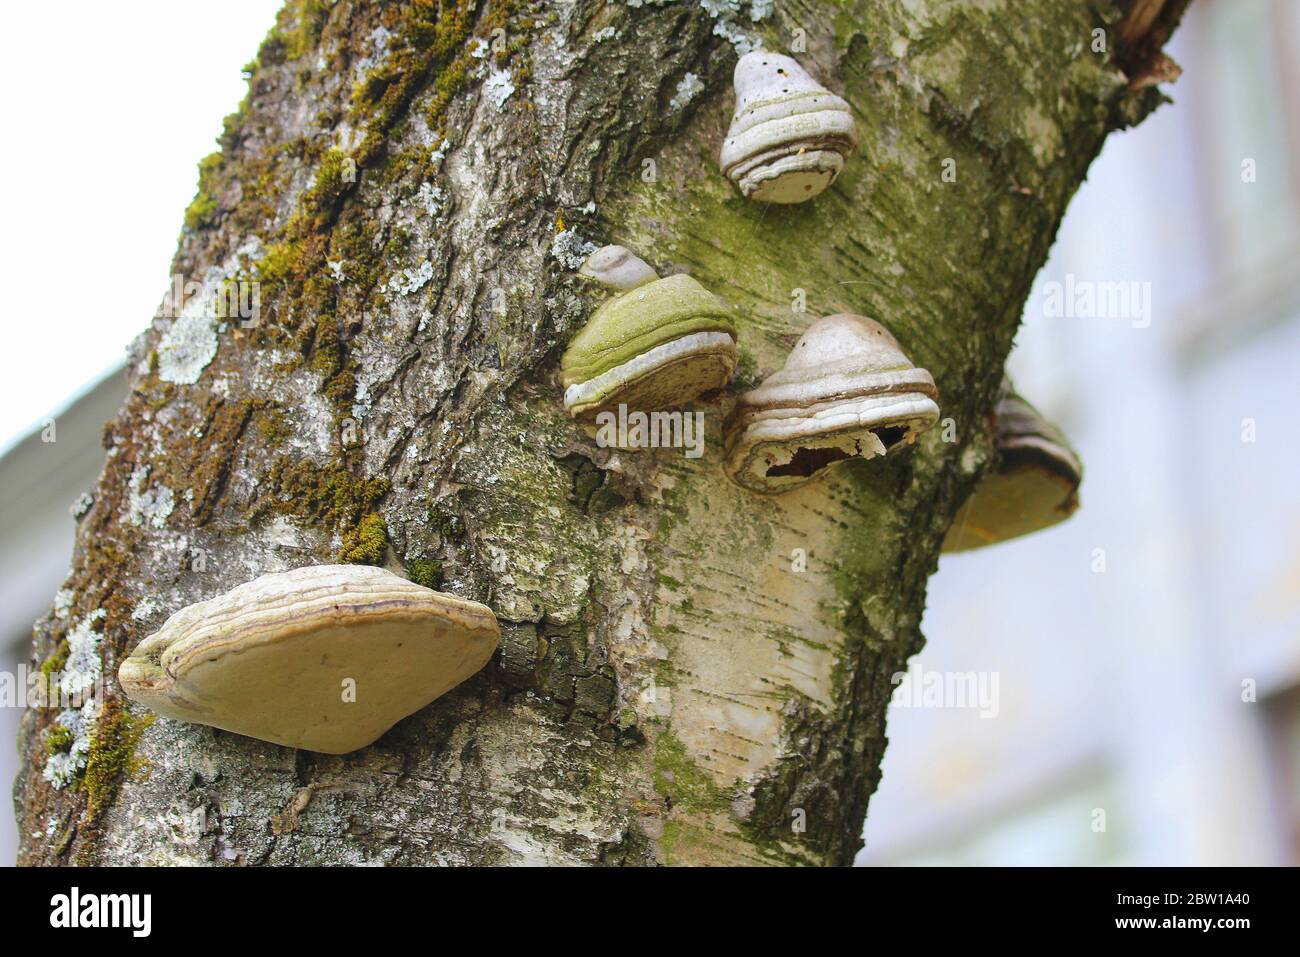 Un champignon de bois sur le tronc d'un bouleau. Champignon parasite sur un arbre. Texture de l'écorce et de la mousse. Banque D'Images